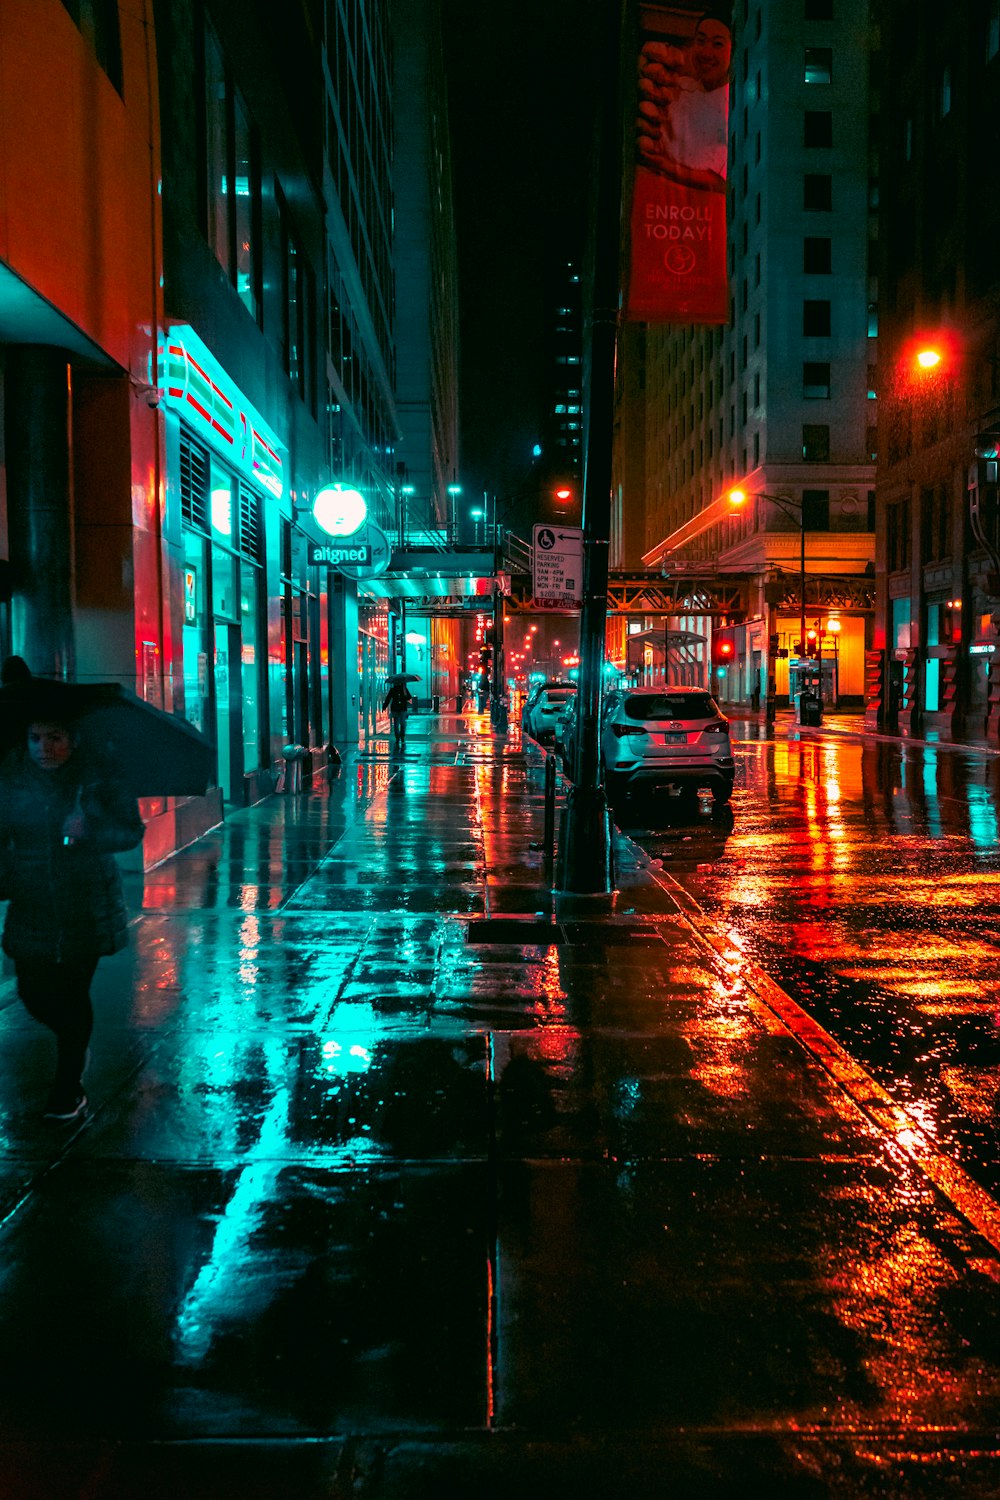 une personne marchant dans une rue tenant un parapluie